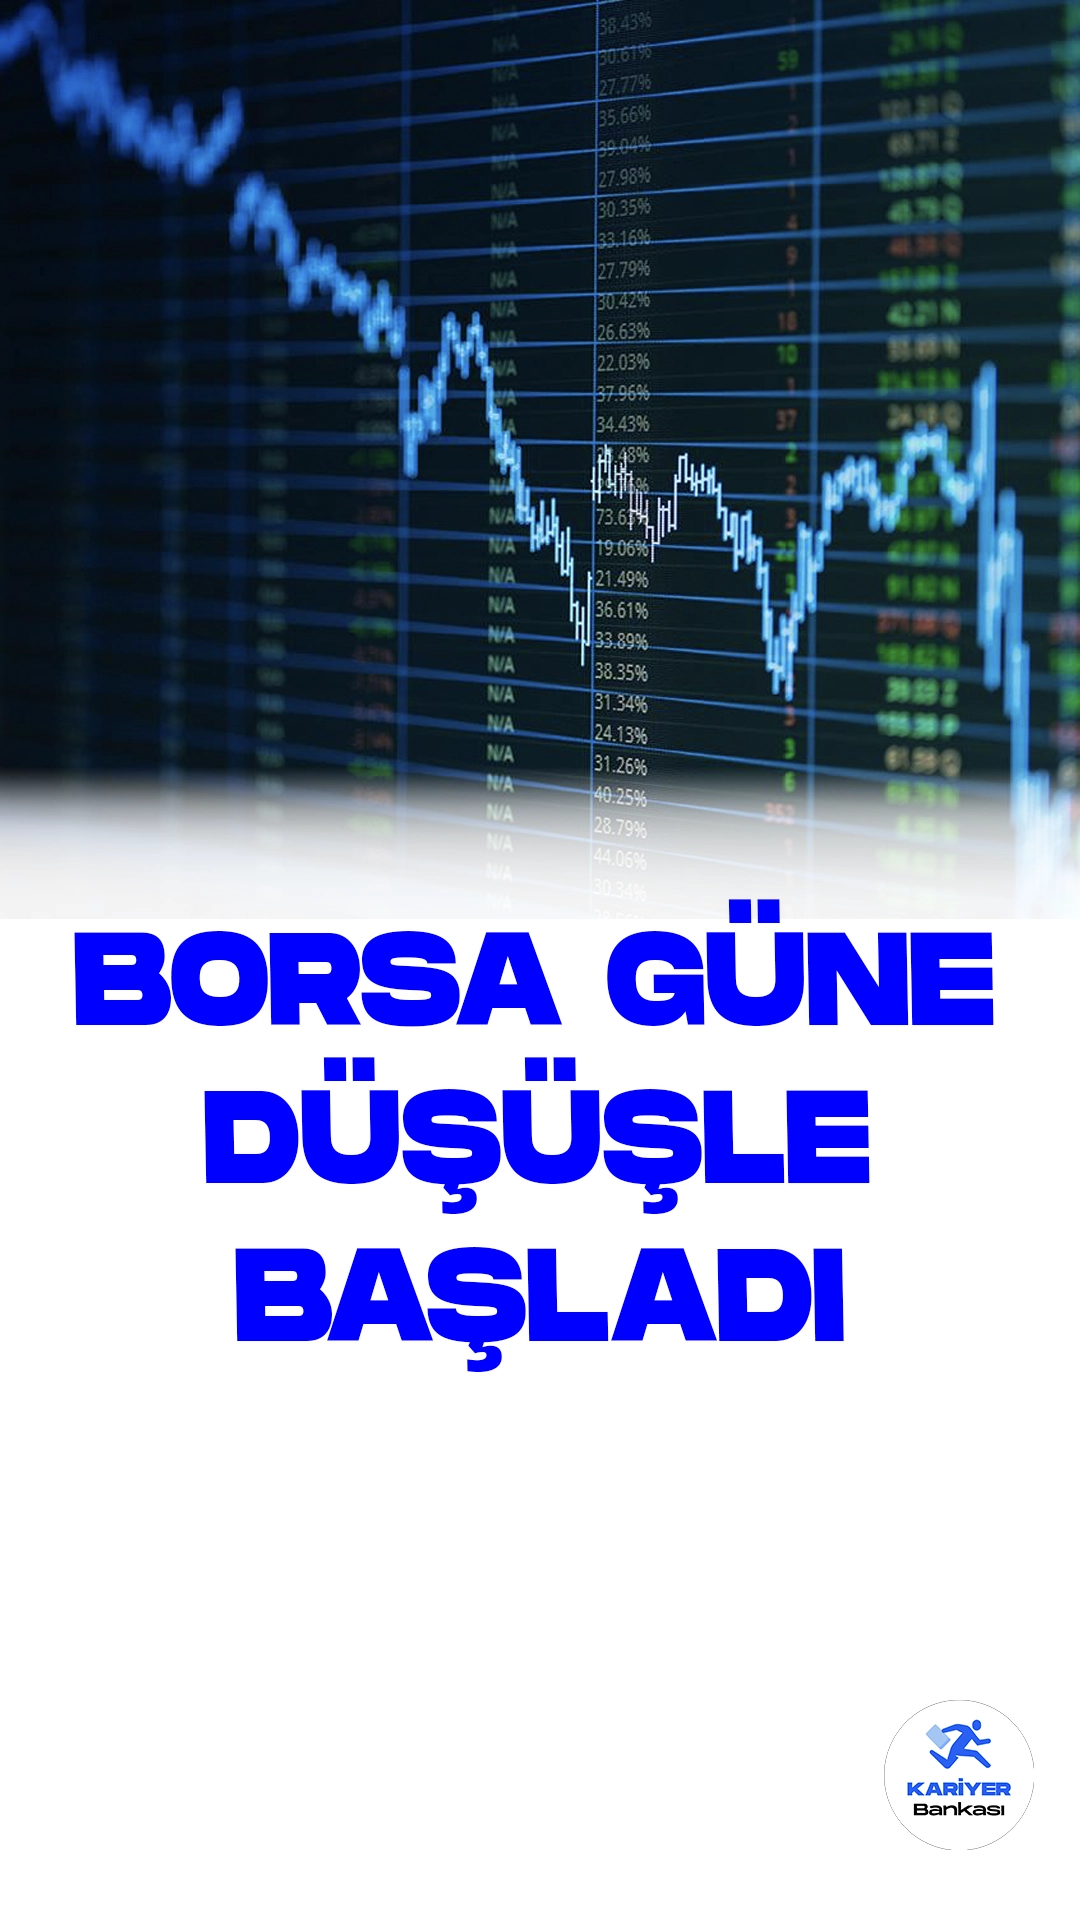 Borsa İstanbul'da BIST 100 Endeksi Yüzde 1,85'lik Düşüşle Güne Başladı.Borsa İstanbul'da işlem gören BIST 100 endeksi, güne yüzde 1,85'lik bir düşüşle 7.964,63 puan seviyesinden başladı. Açılış anında endeks, önceki kapanış seviyesine göre 150,38 puanlık bir azalış yaşayarak yüzde 1,85 değer kaybetti.